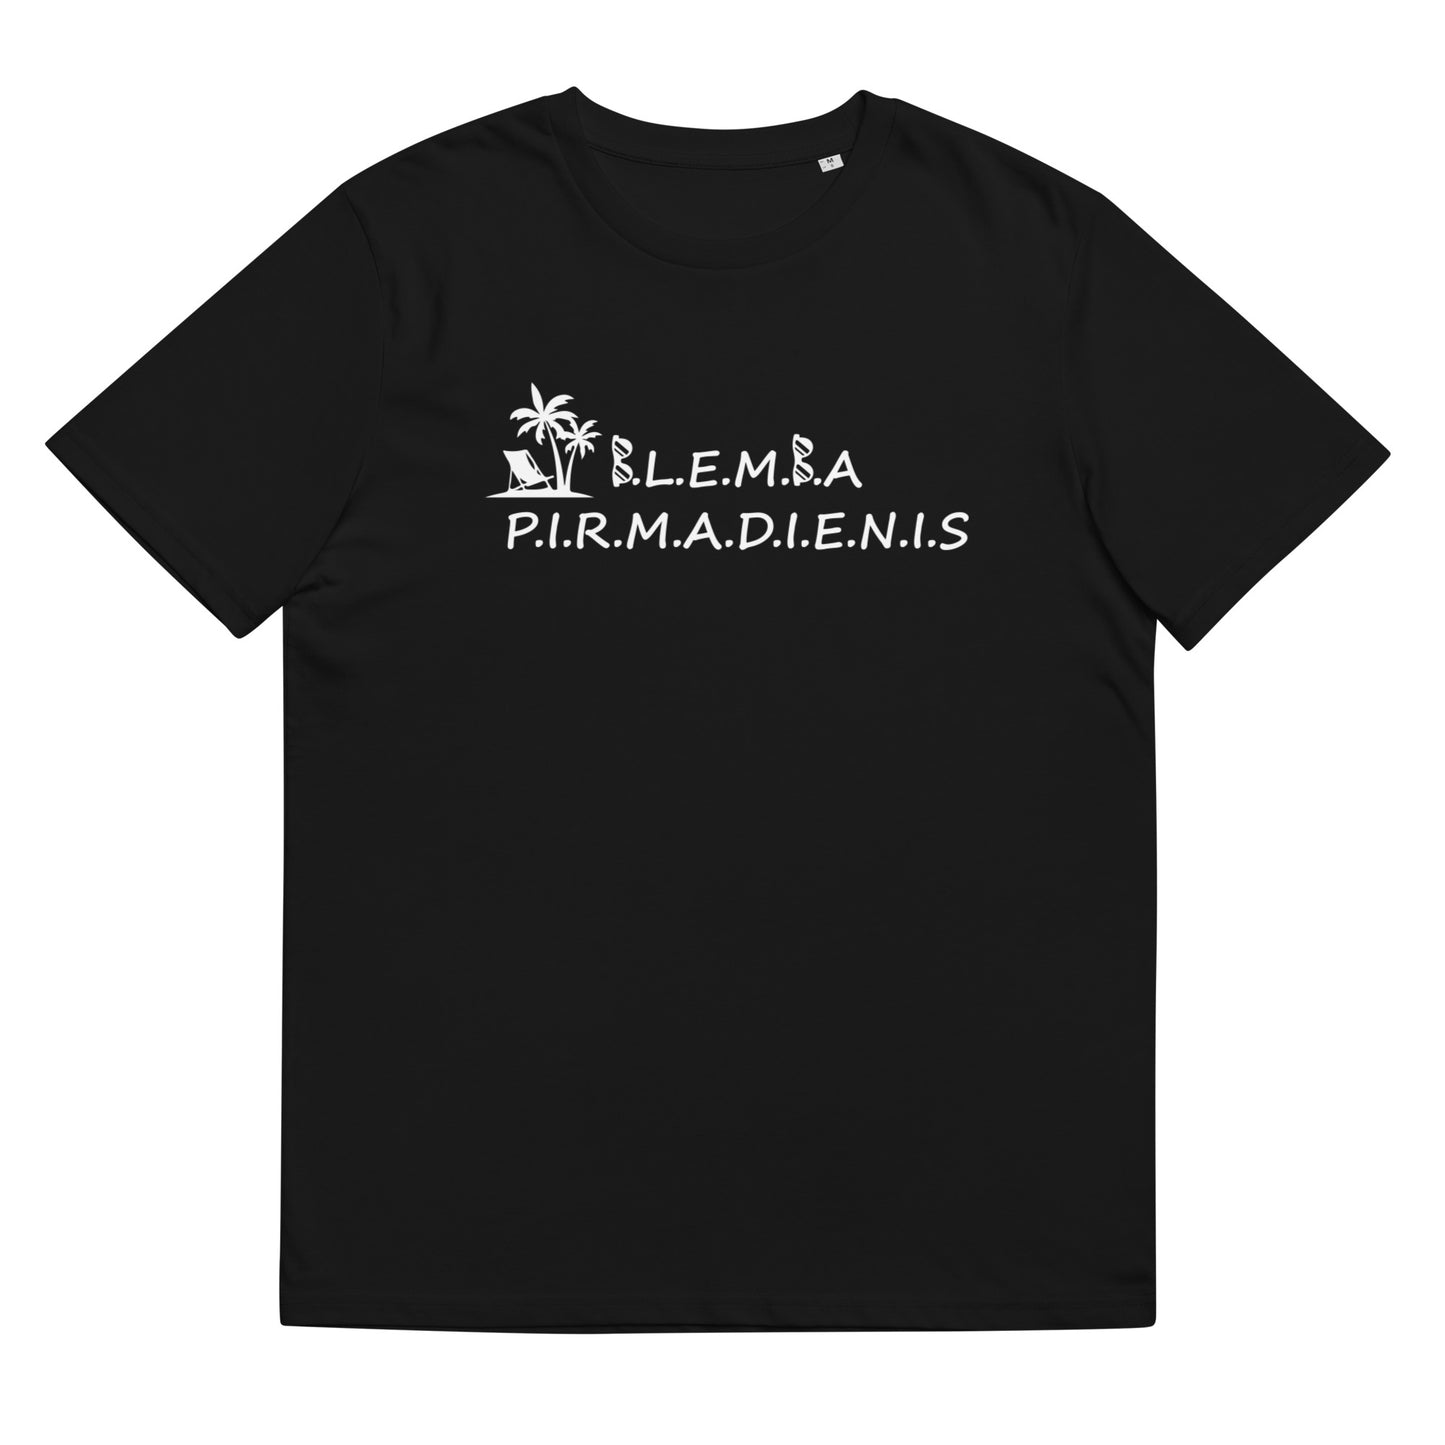 Organic cotton unisex t-shirt: Blemba Monday